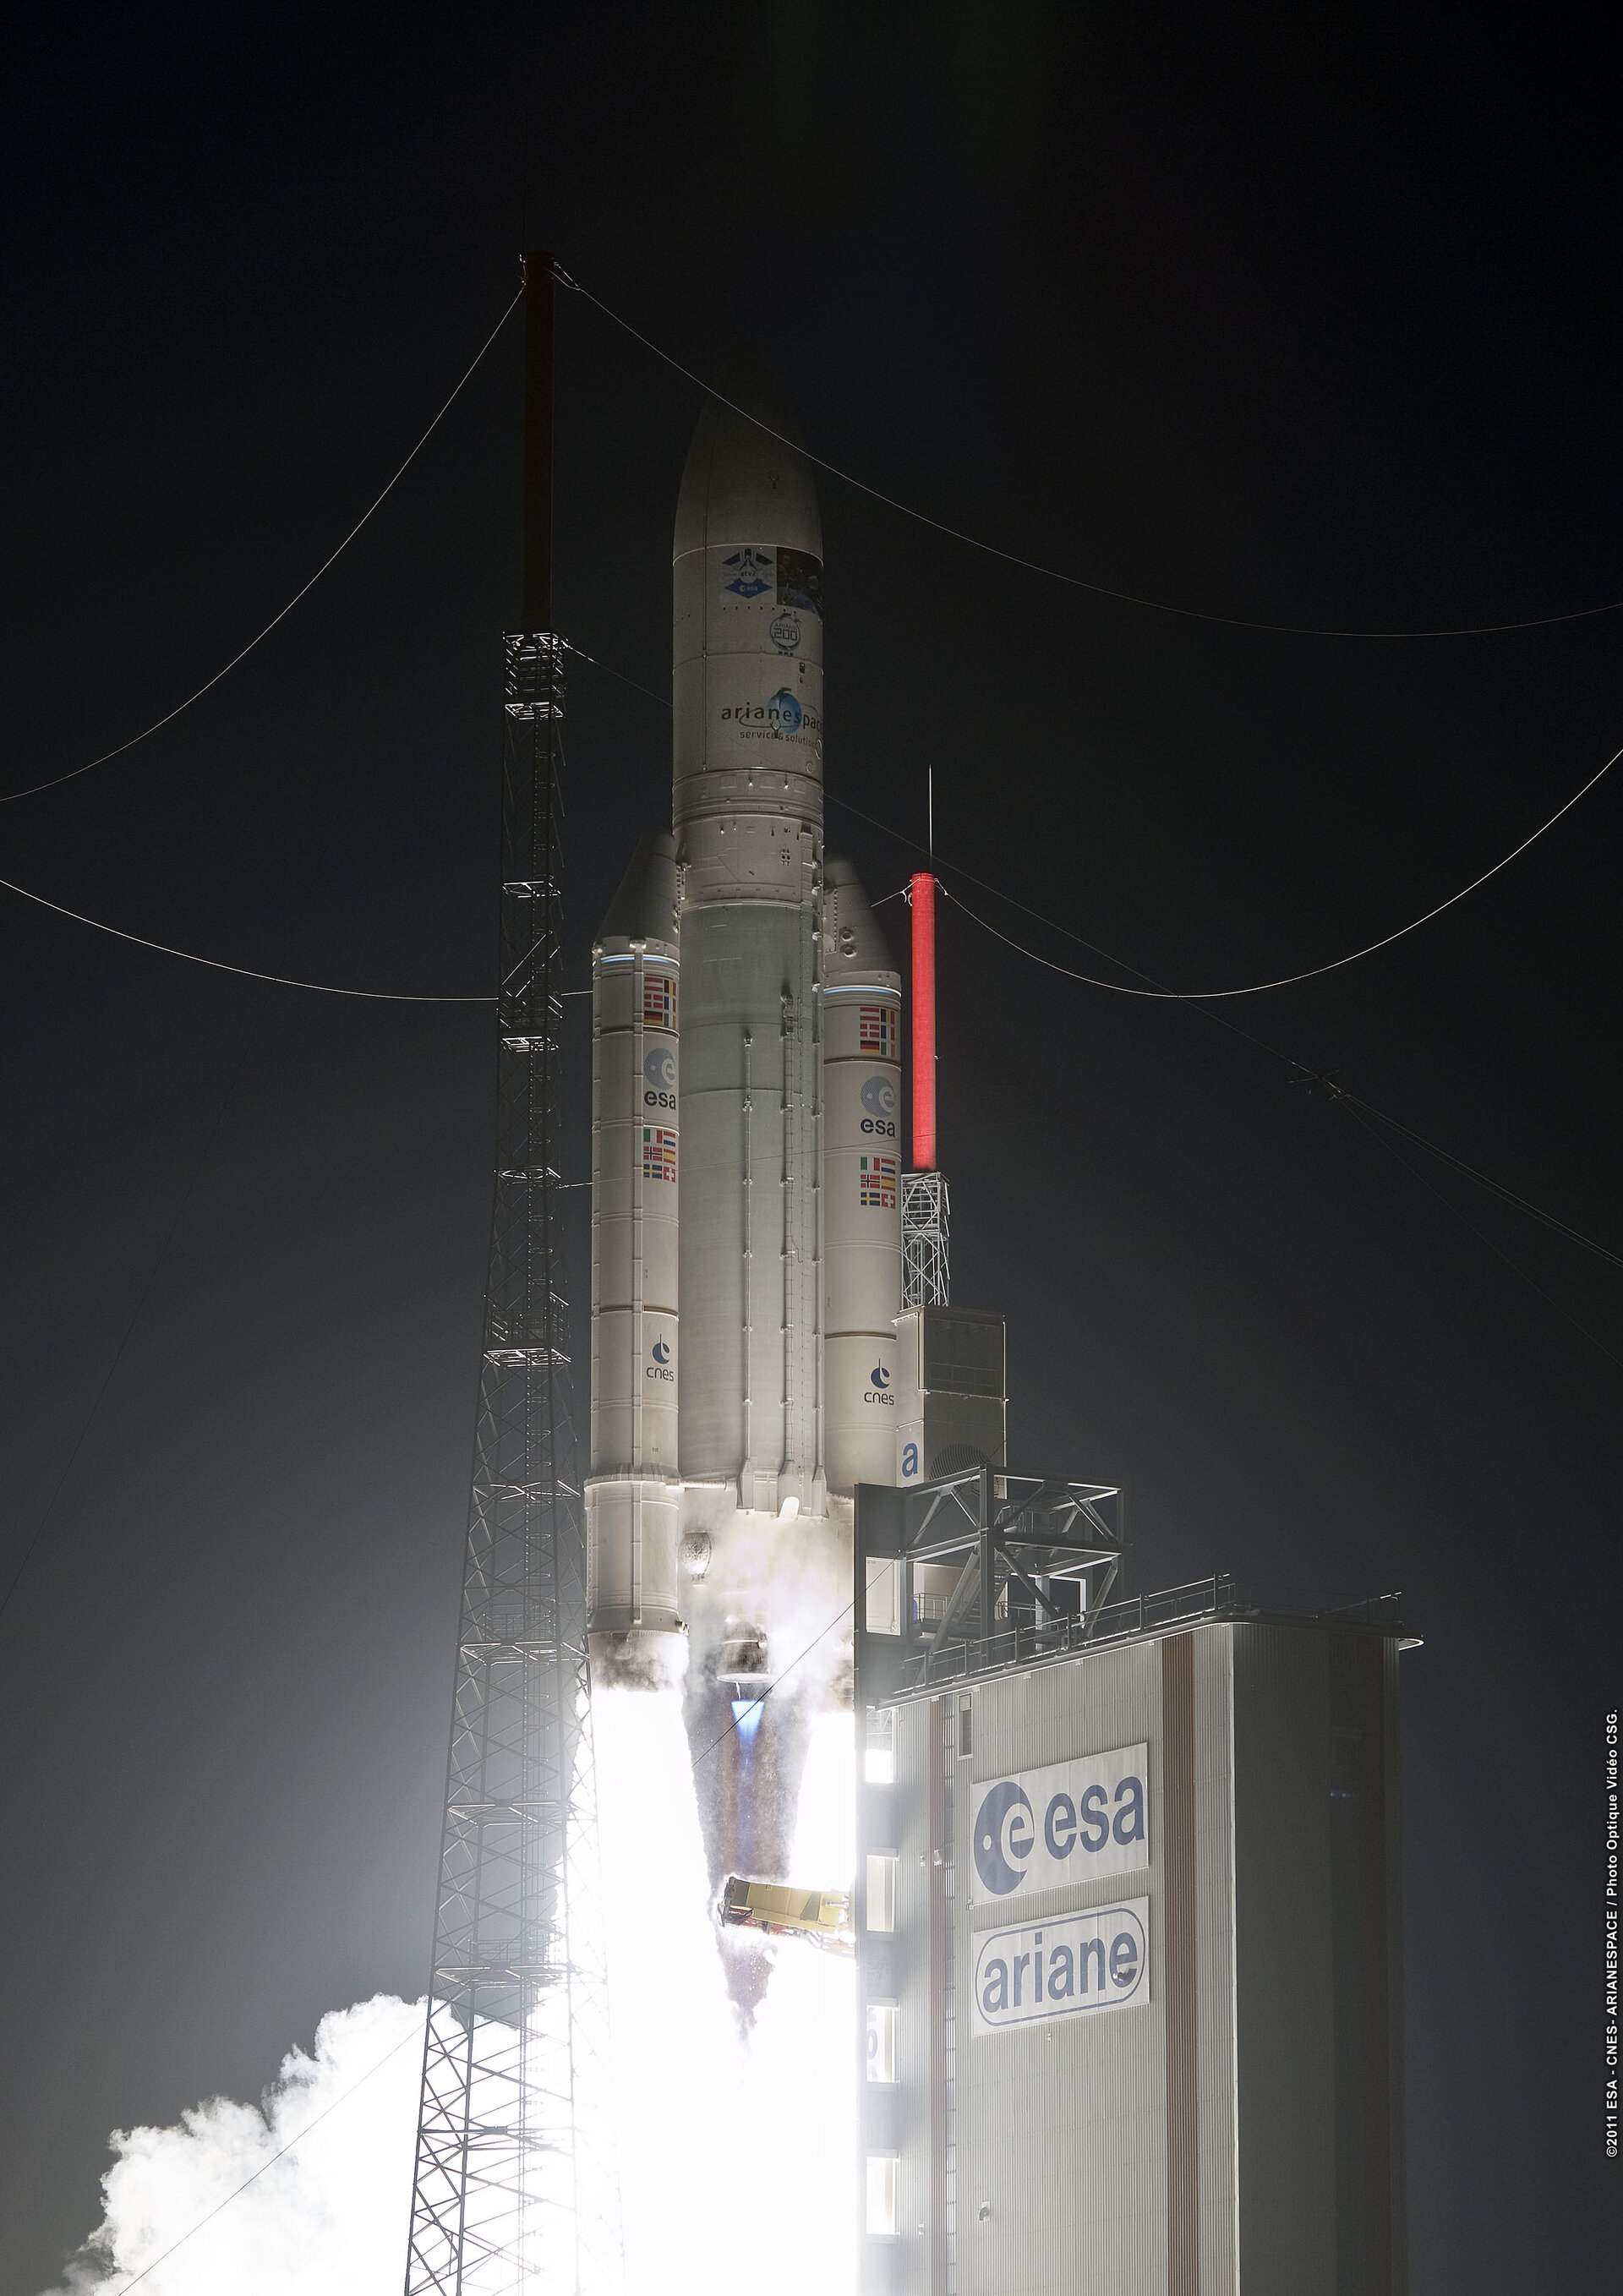 Ariane 5 launches ATV-2